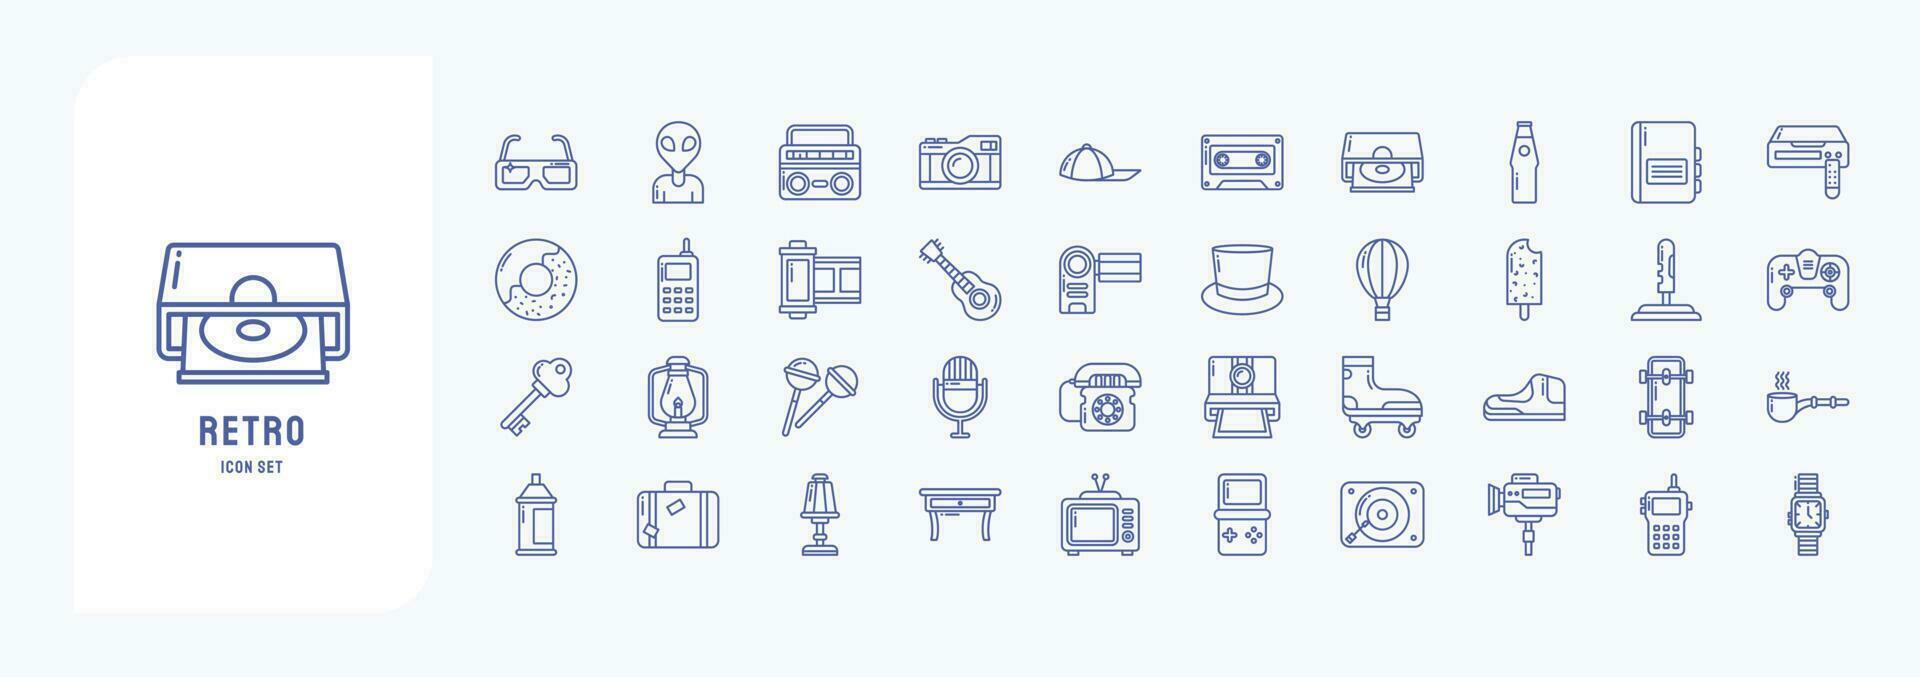 collezione di icone relazionato per retrò oggetti, Compreso icone piace alieno, boombox, telecamera, cassetta, ciambella e Di Più vettore